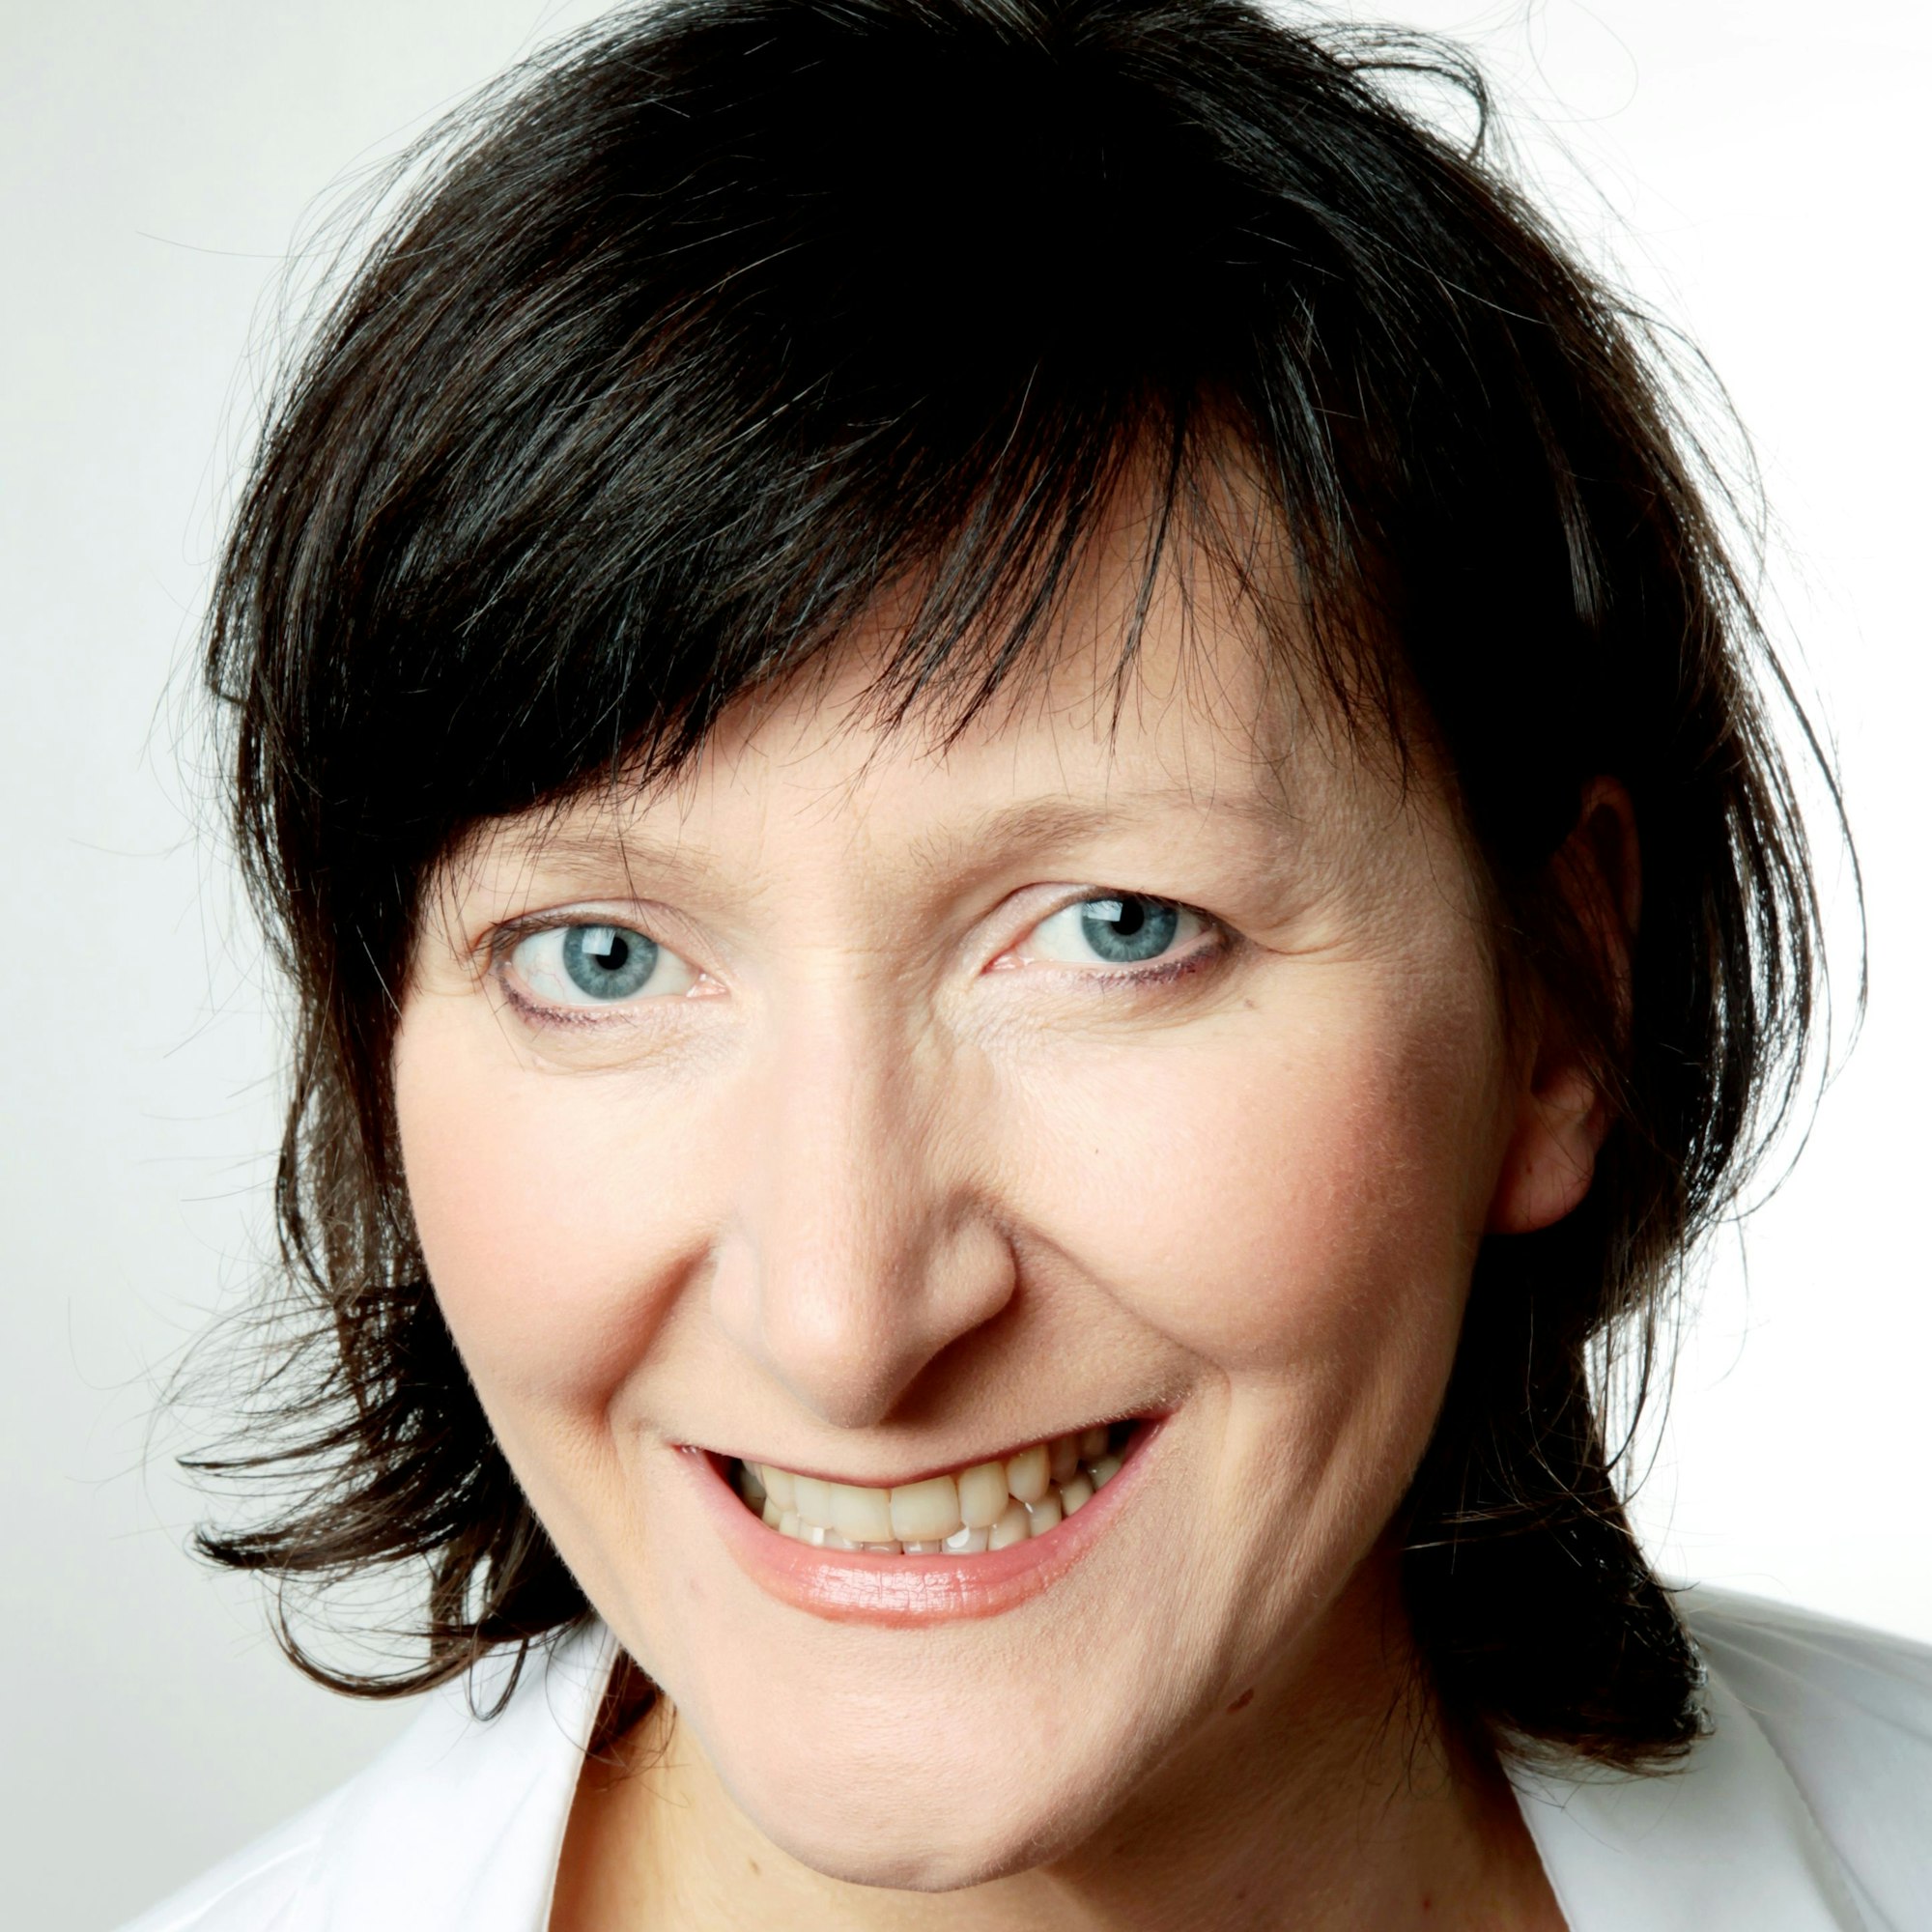 Hildegard Labouvie, Diplom-Psychologin und Geschäftsführerin des Vereins Lebenswert e.V. an der Uniklinik Köln